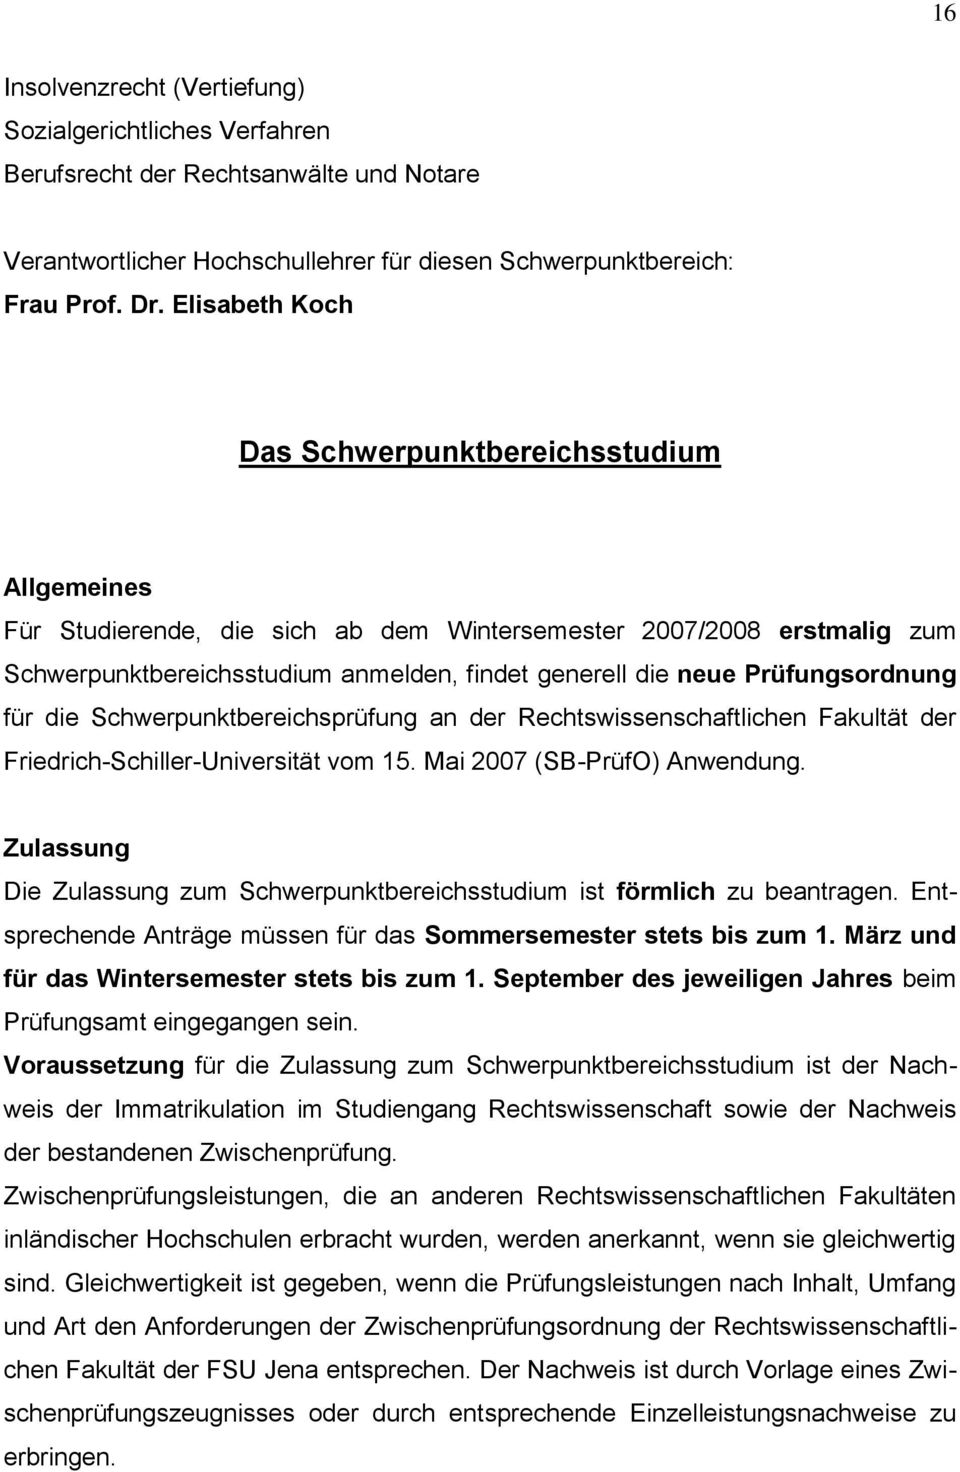 Prüfungsordnung für die Schwerpunktbereichsprüfung an der Rechtswissenschaftlichen Fakultät der Friedrich-Schiller-Universität vom 15. Mai 2007 (SB-PrüfO) Anwendung.